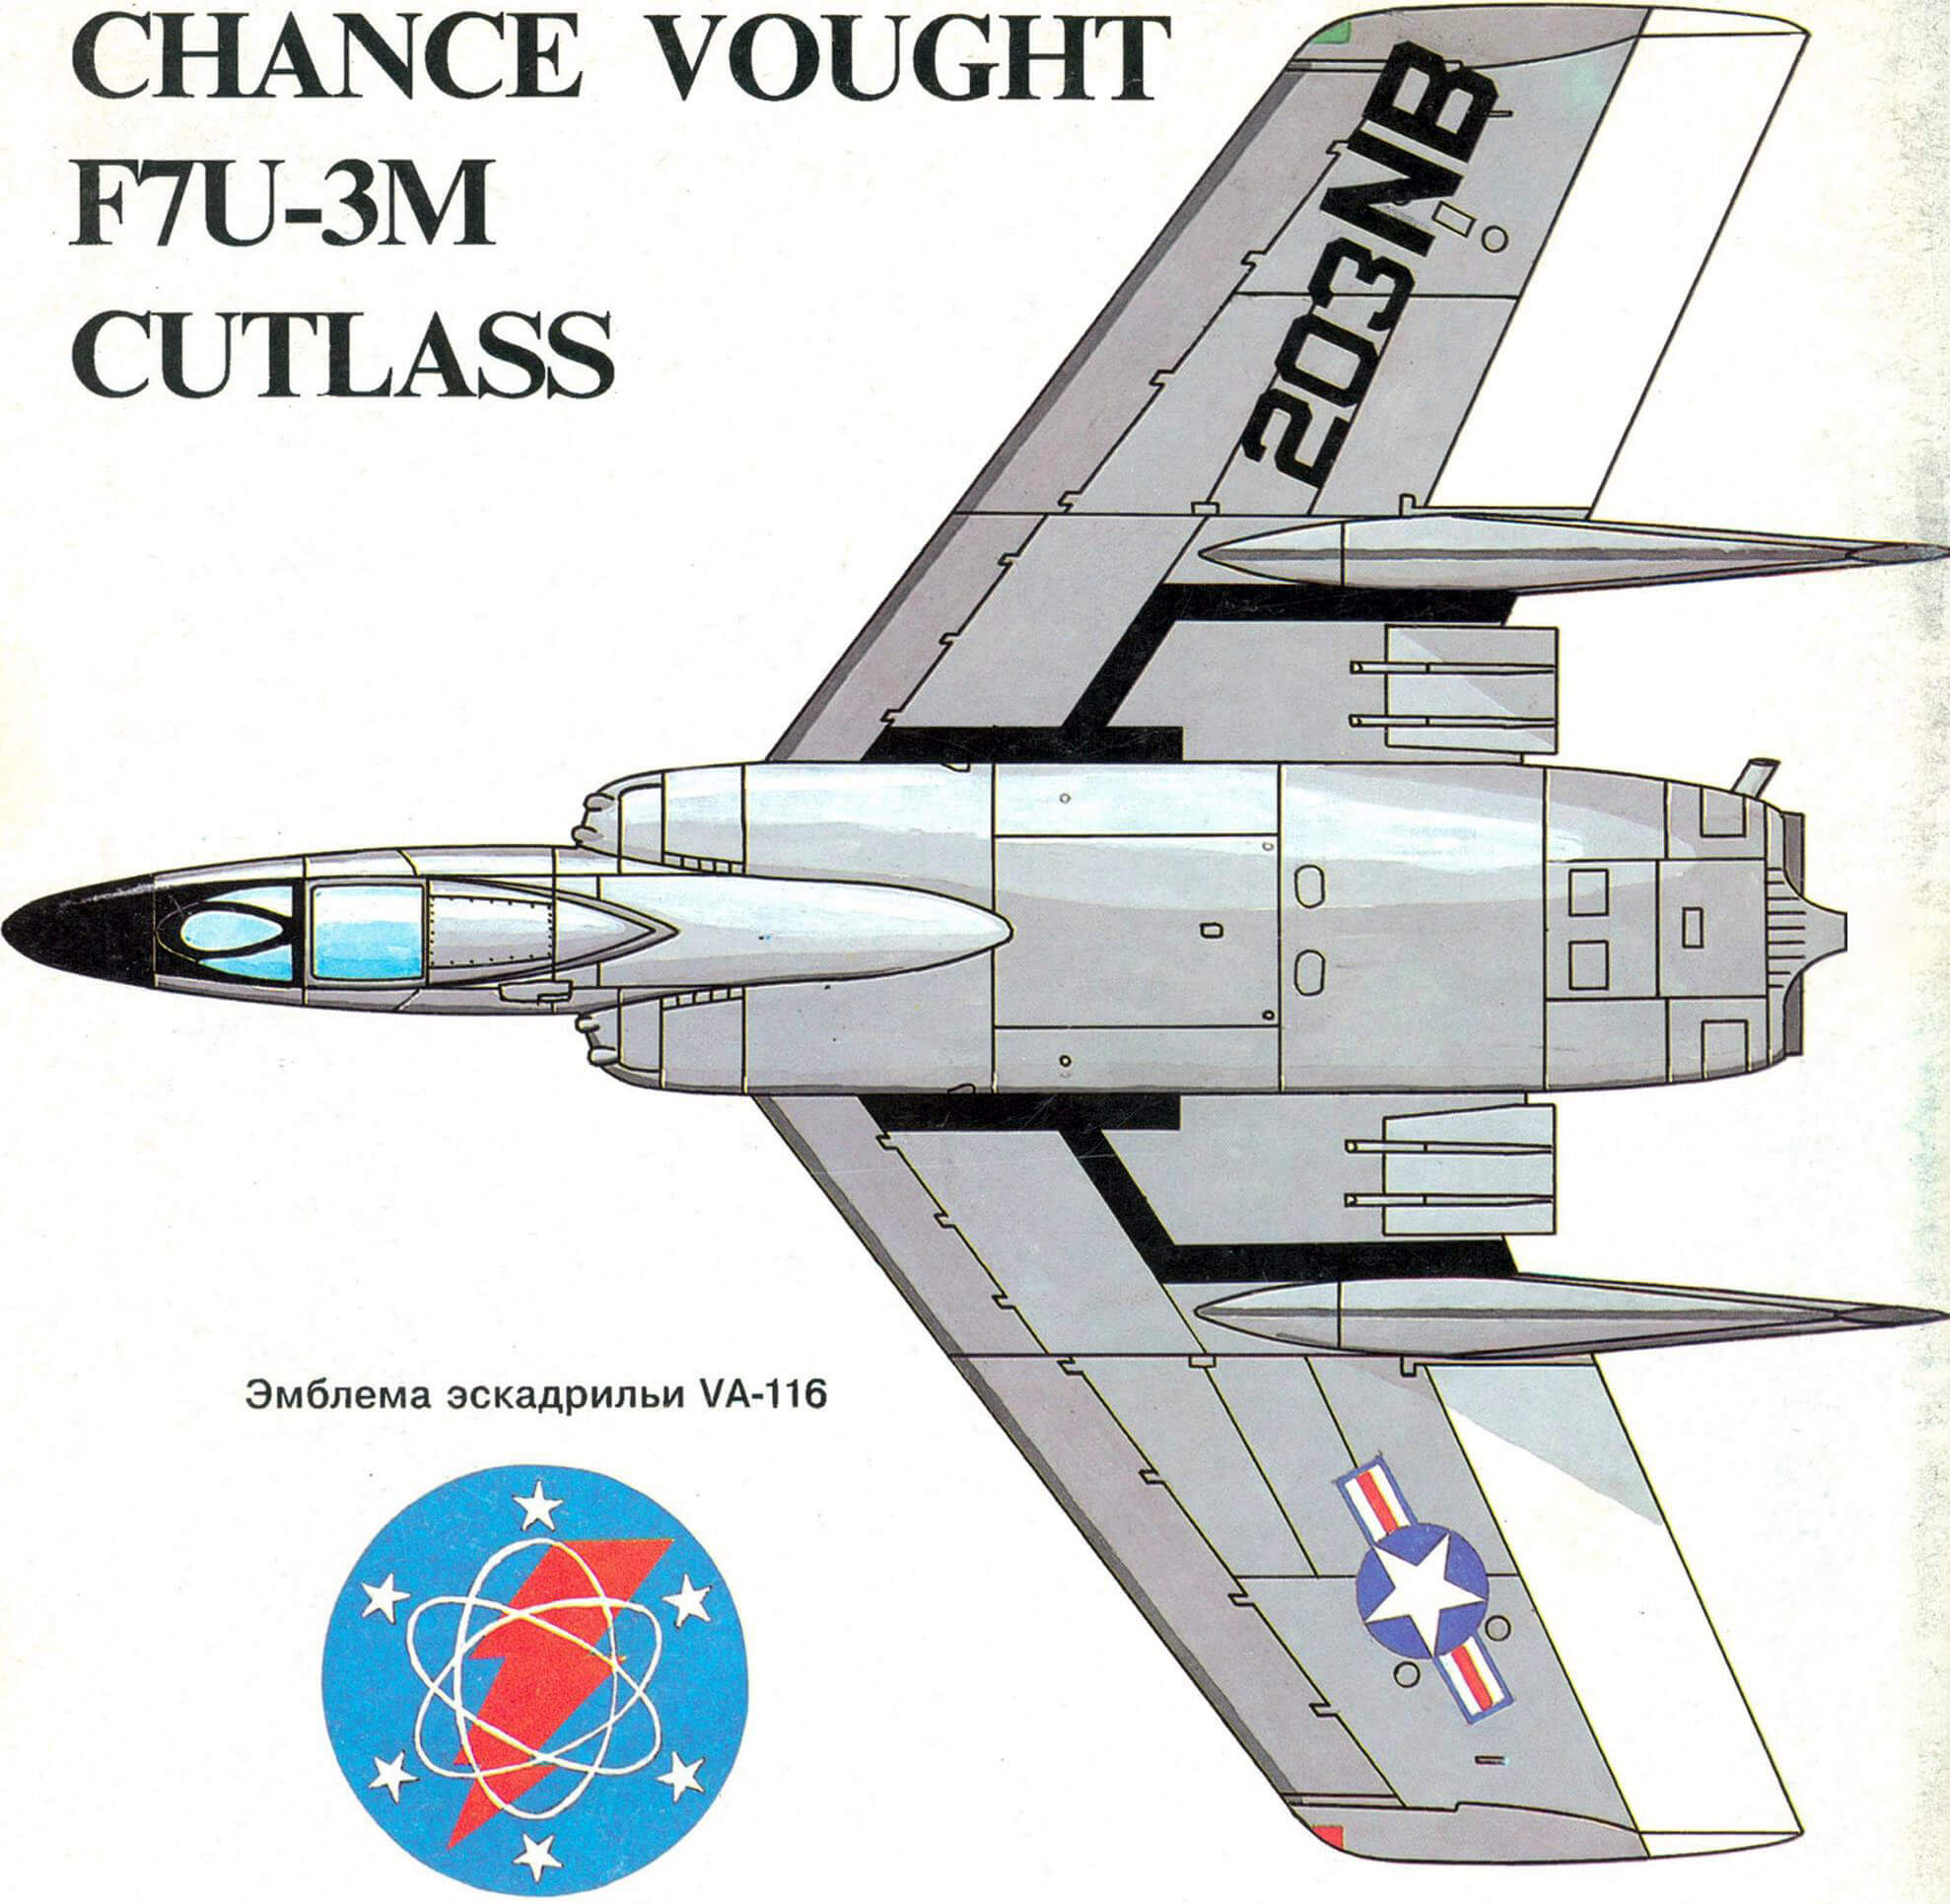 CHANCE VOUGHT F7U-3M CUTLASS